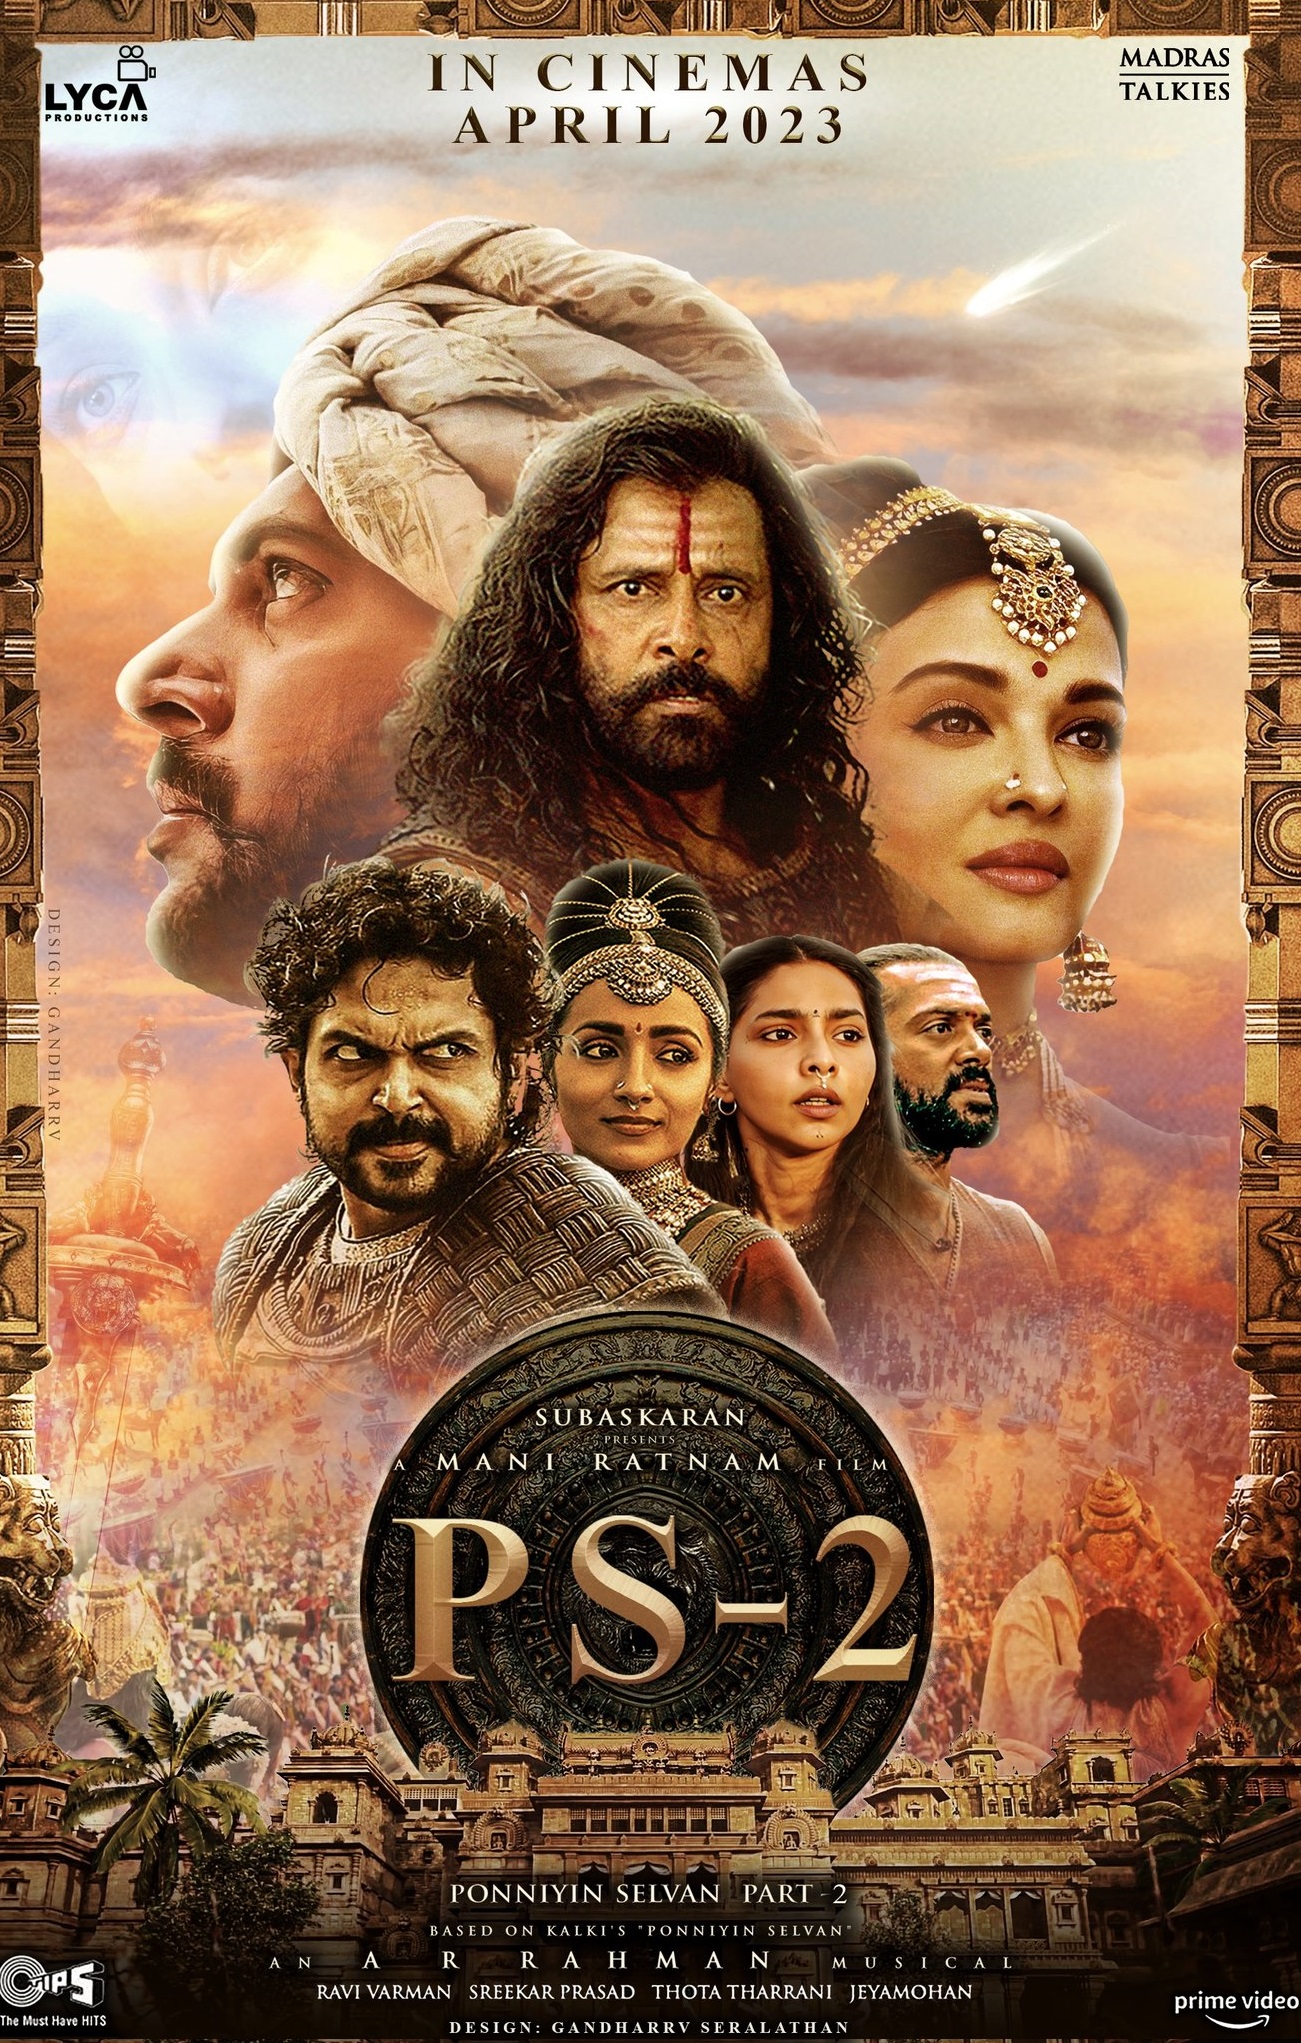 Ponniyin Selvan - Part 2 2023 Tamil Action Movie Online